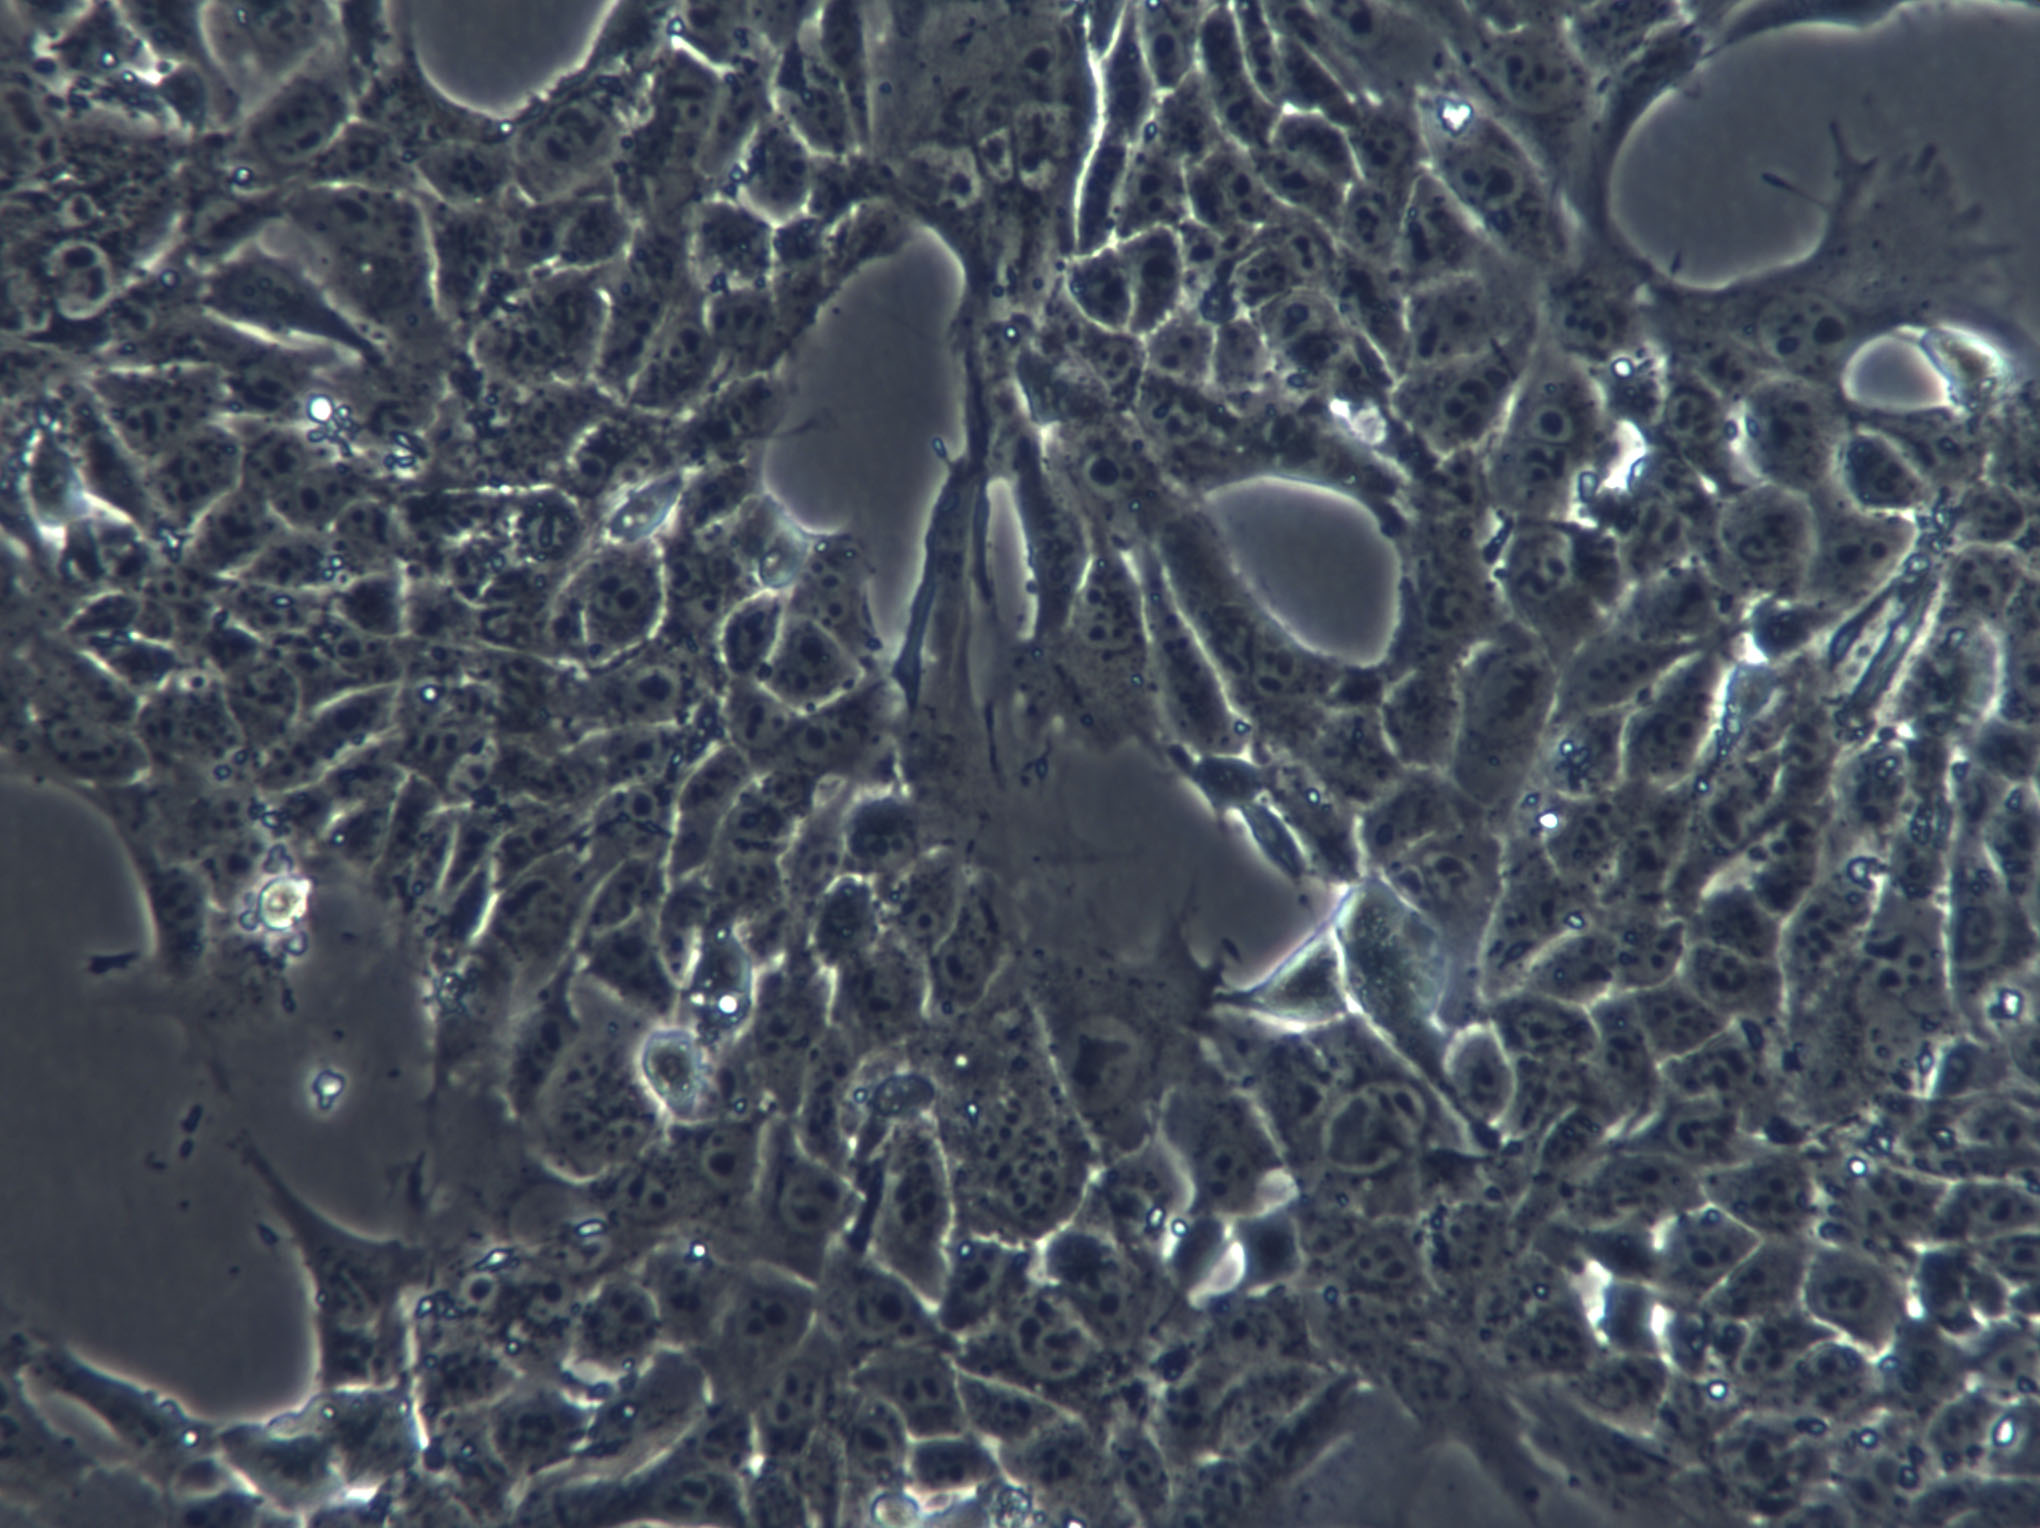 Hs 746.T Cells|人胃癌克隆细胞